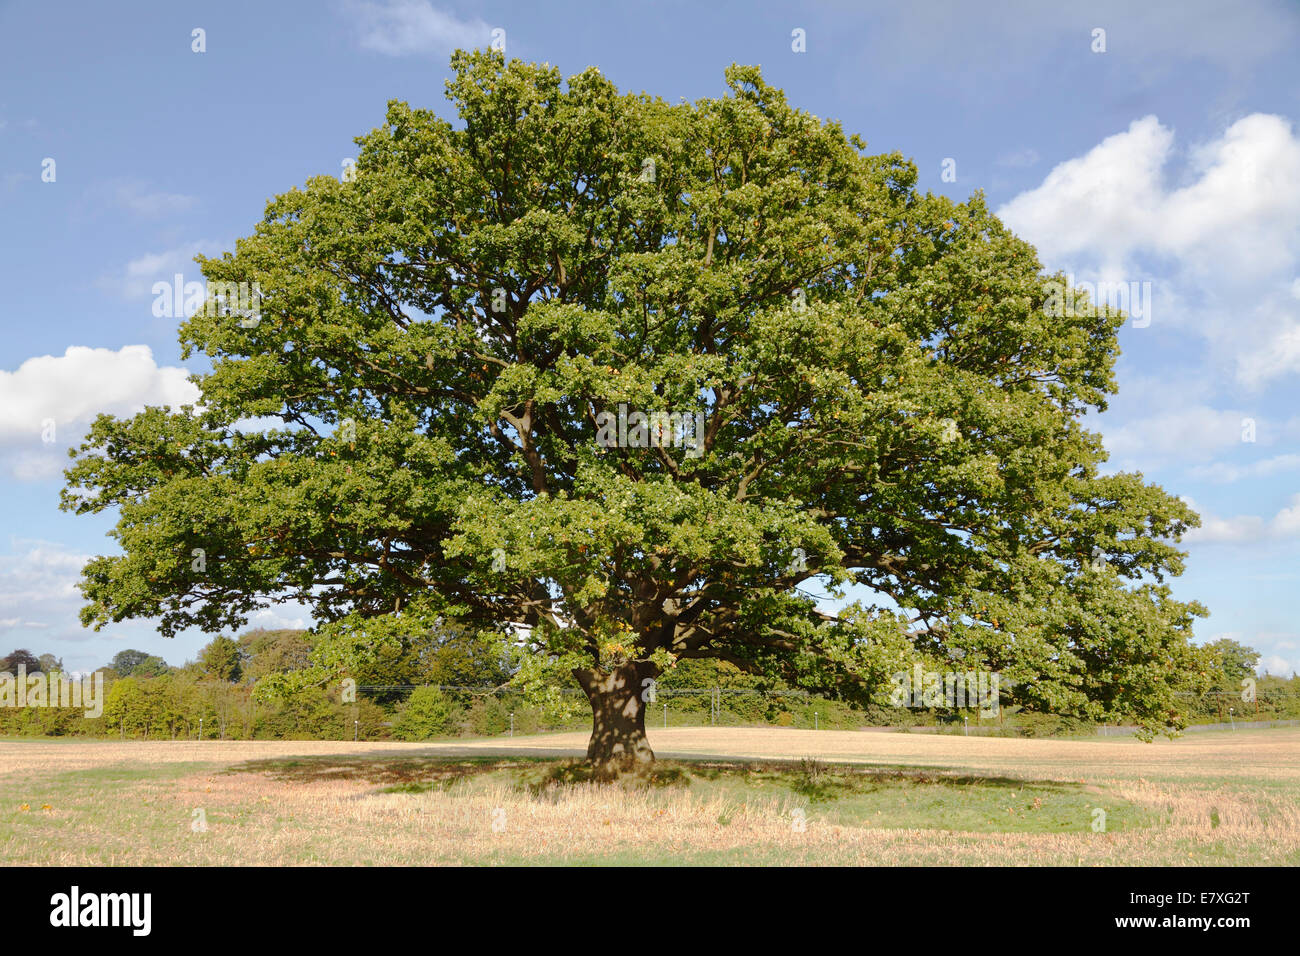 Große, alte Eiche, gewöhnliche Eiche, englische Eiche, Quercus robur, mit grünen Blättern an einem blauen Himmel im Frühherbst. Stockfoto